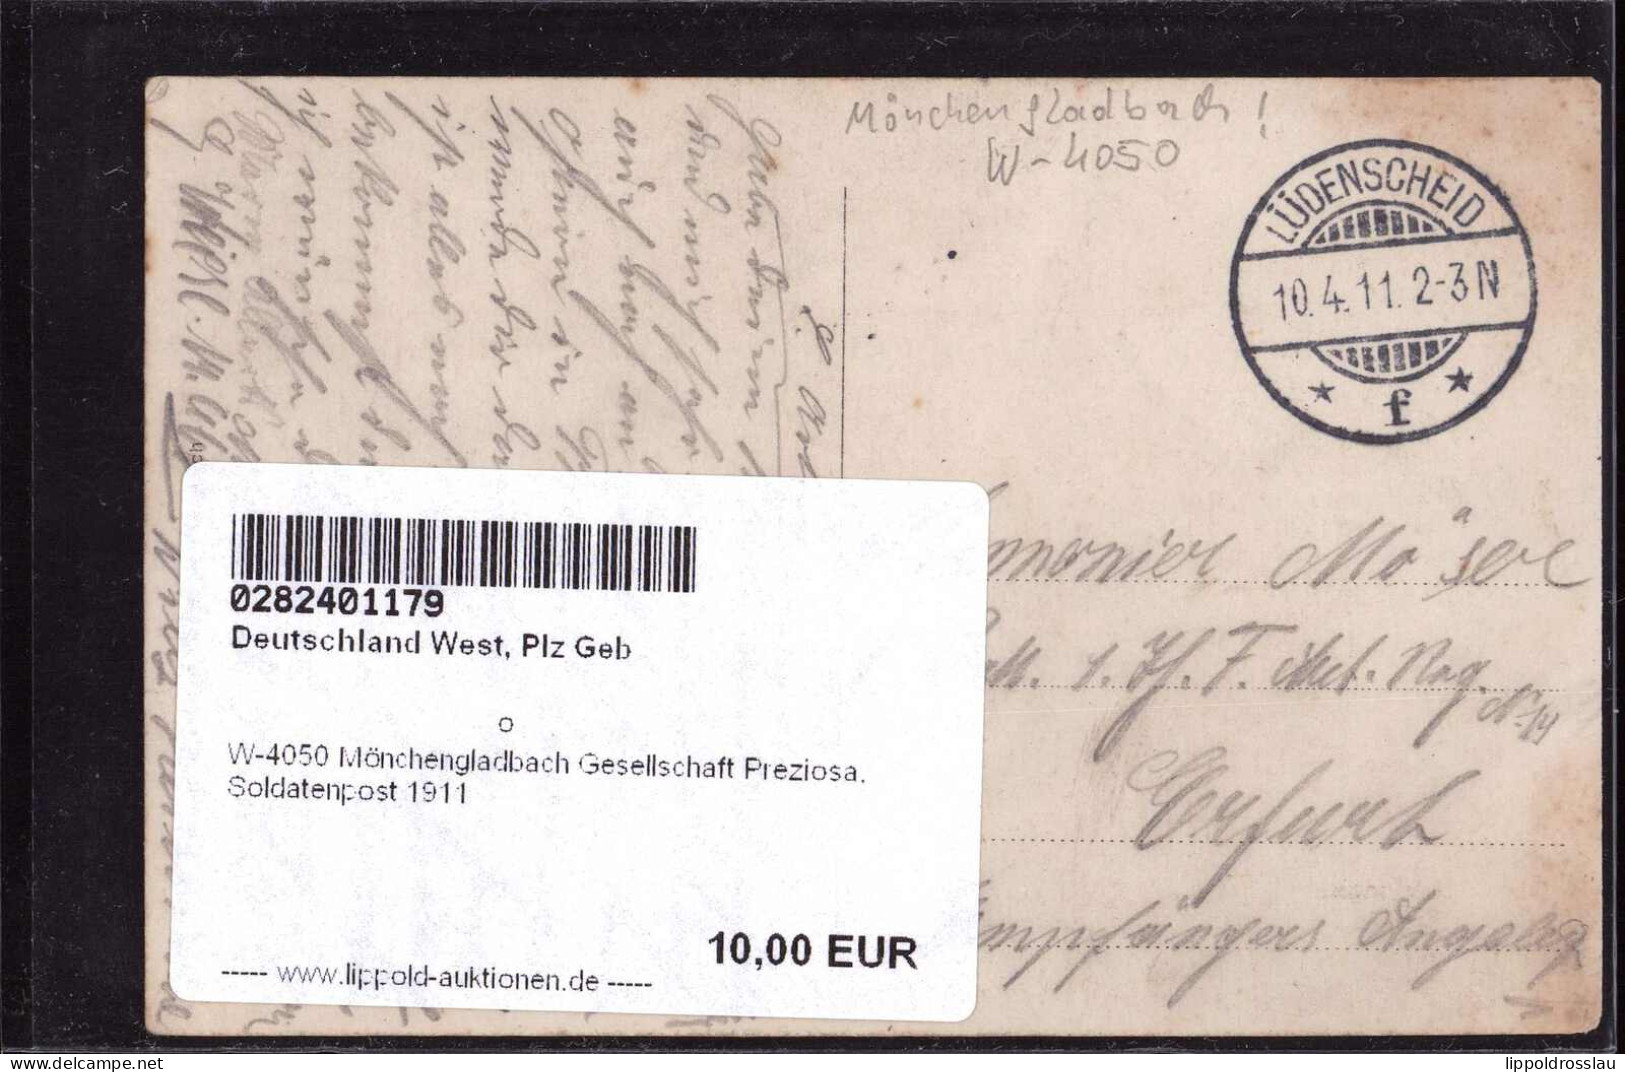 Gest. W-4050 Mönchengladbach Gesellschaft Preziosa, Soldatenpost 1911 - Mönchengladbach